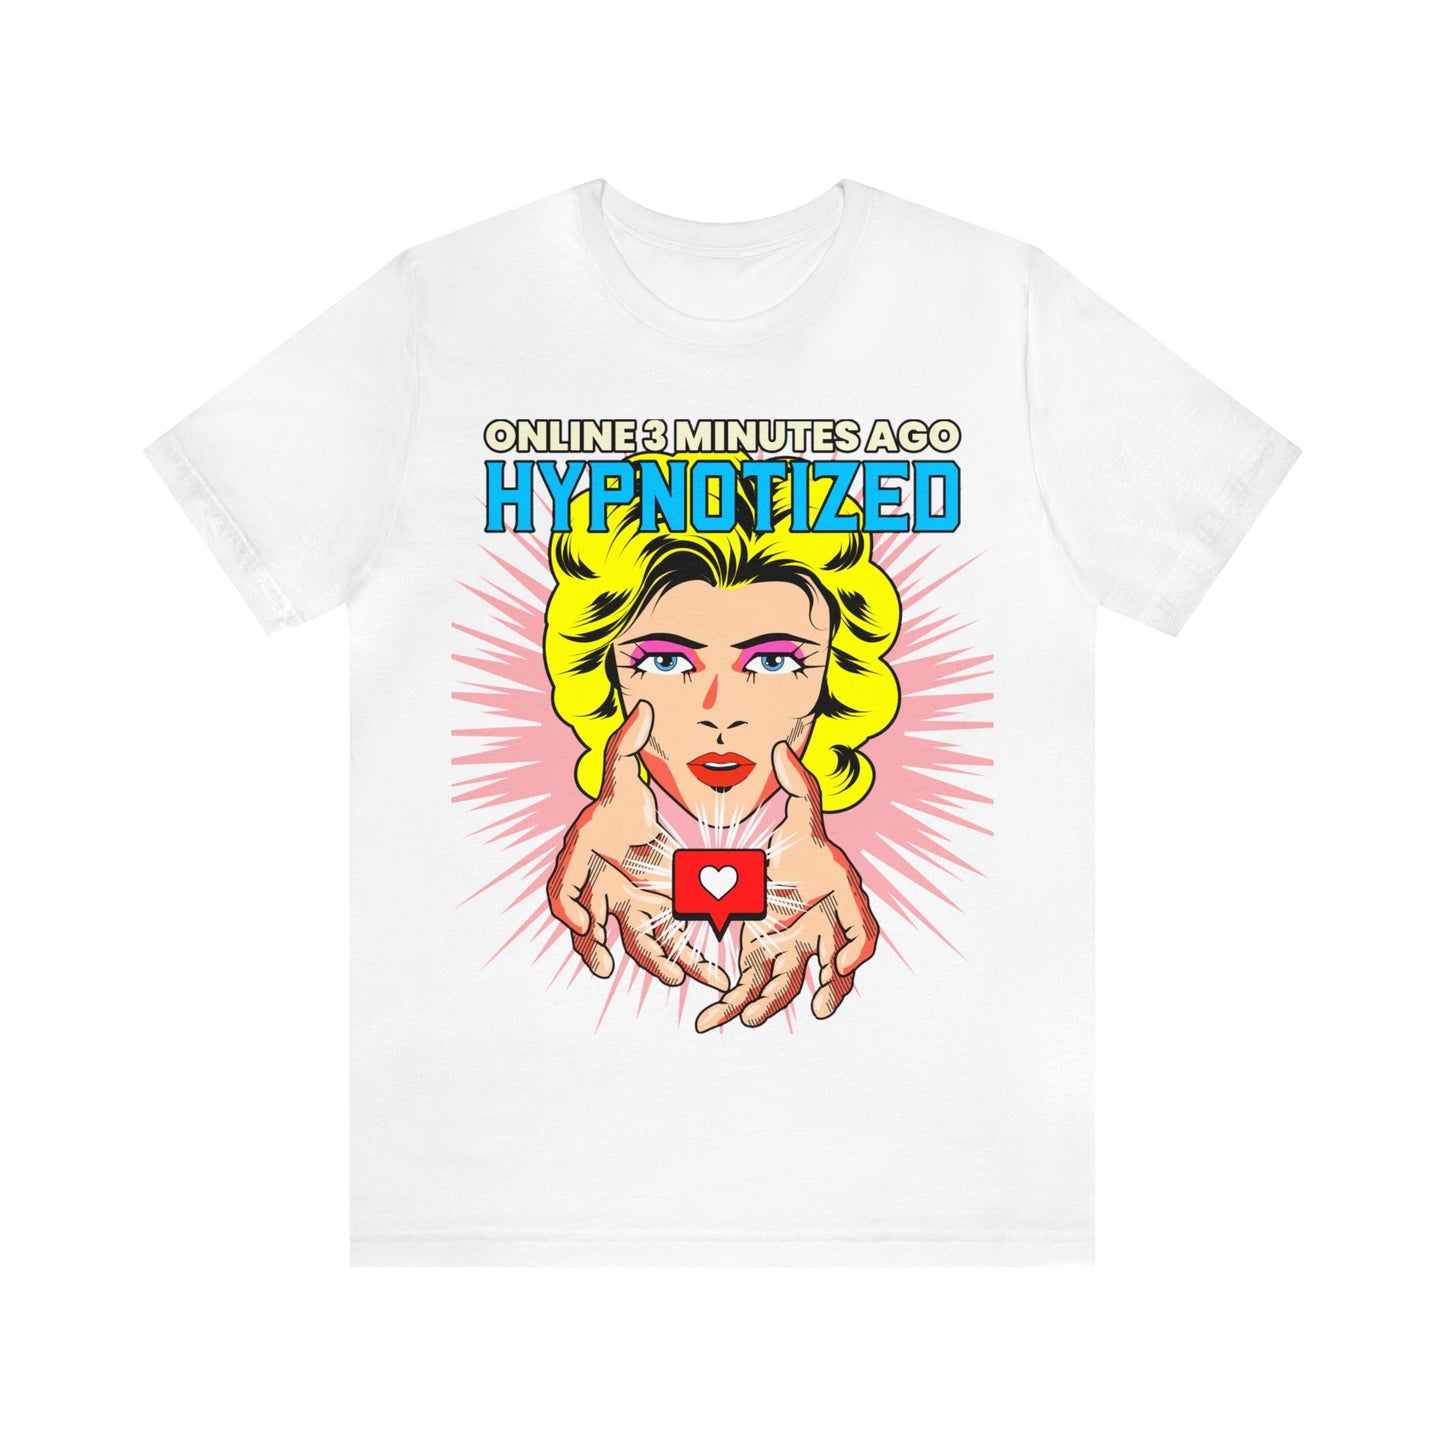 Online 3 Minutes Ago Hypnotized - Unisex T-Shirt